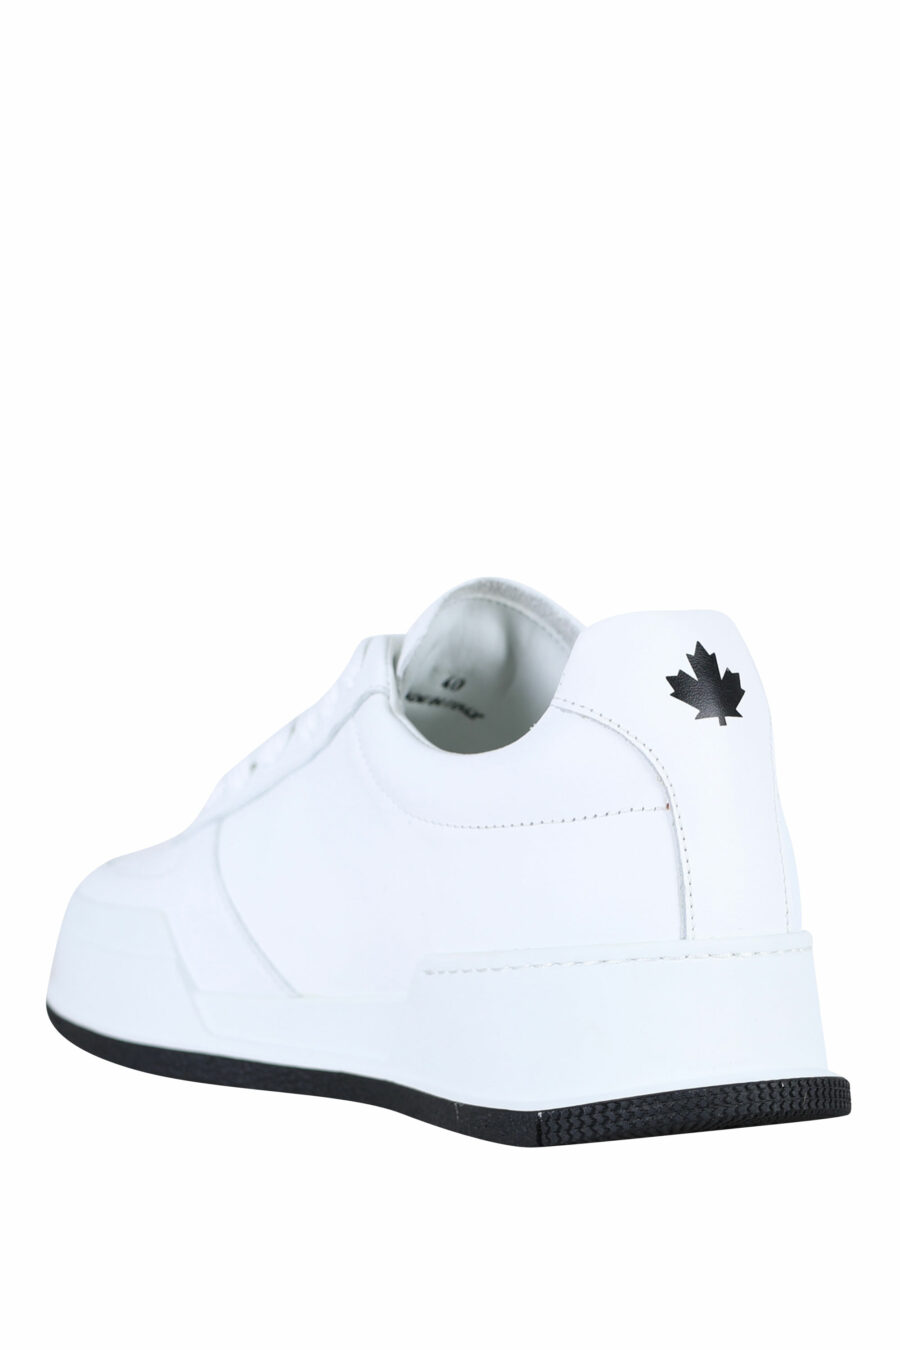 Zapatillas blancas con logo "icon" y suela negra - 8055777248850 3